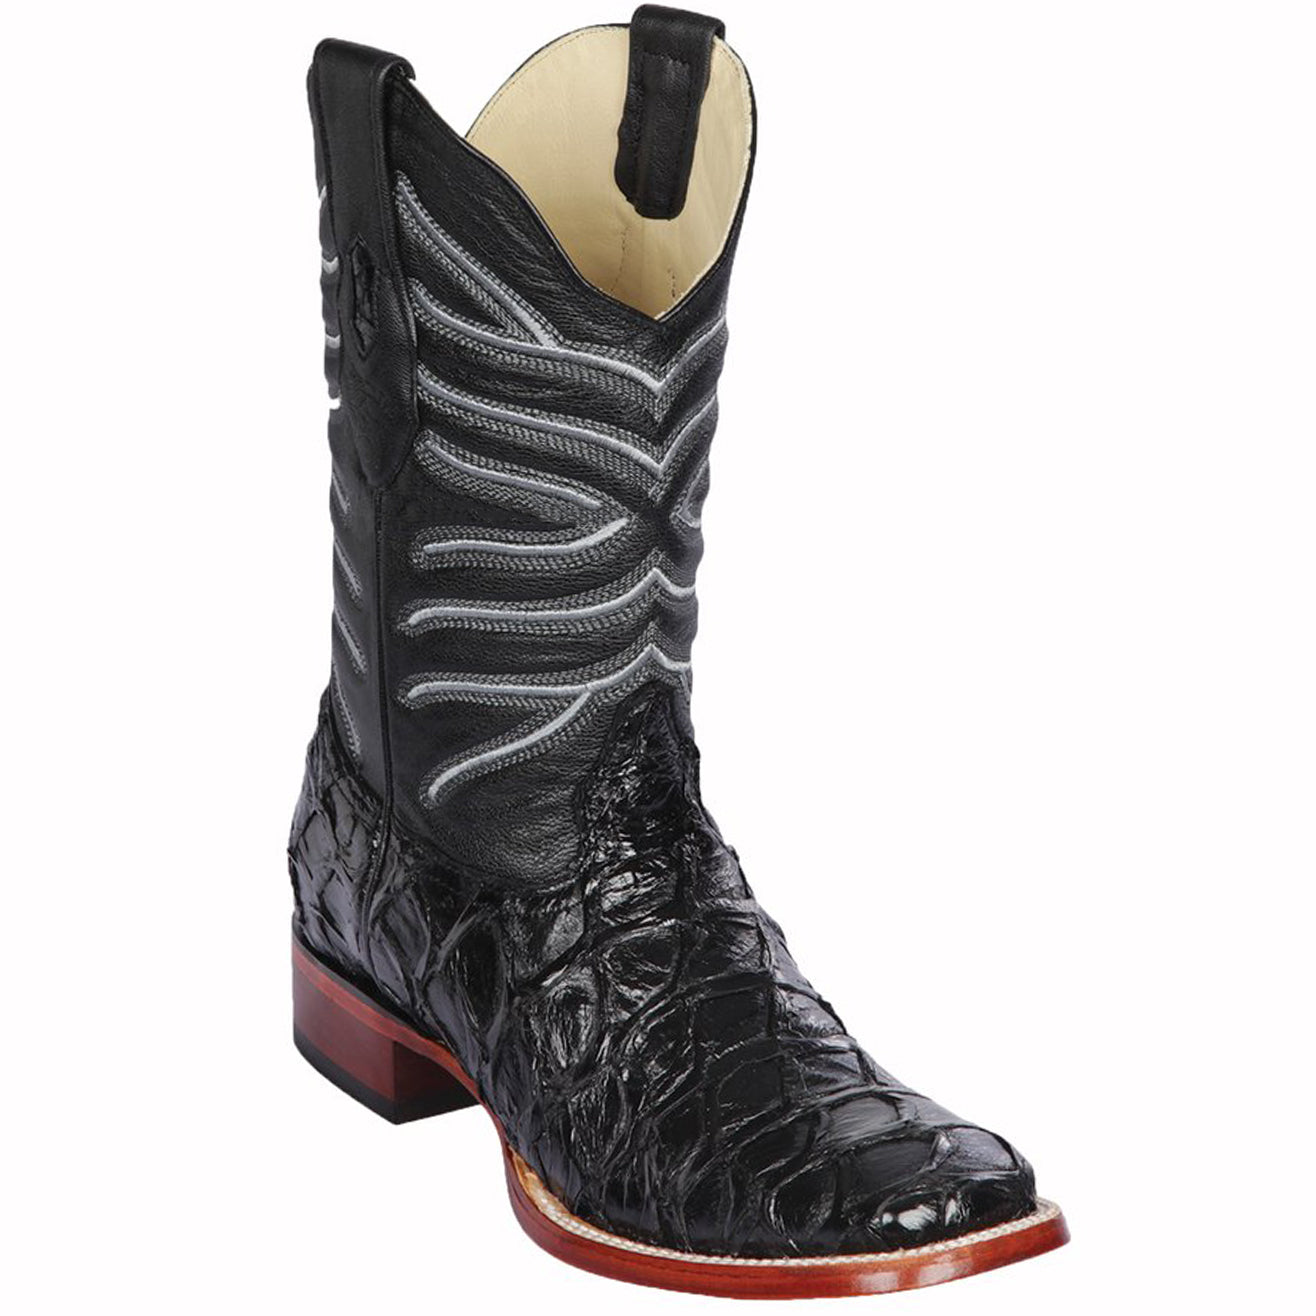 Black pirarucu boots